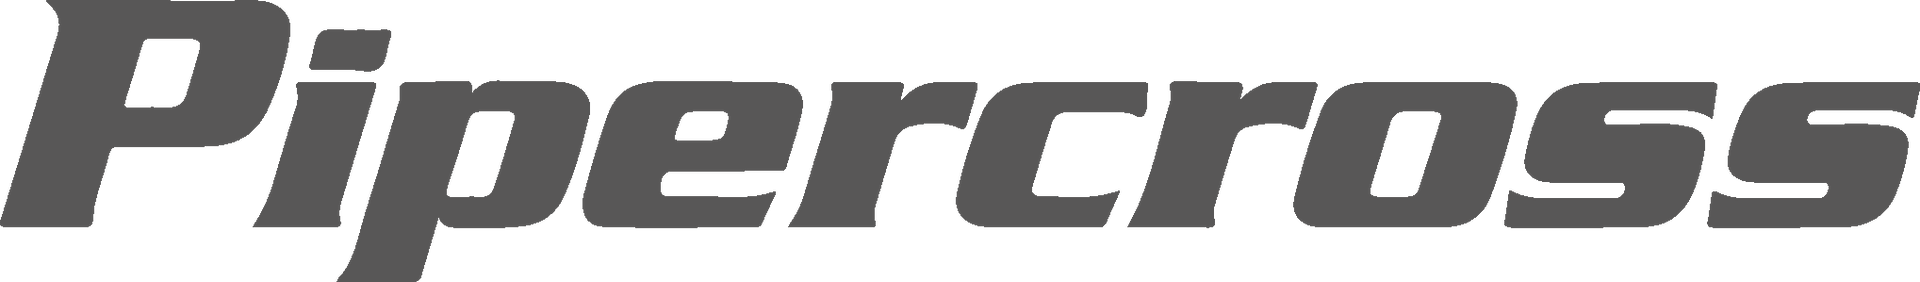 Pipercross Logo